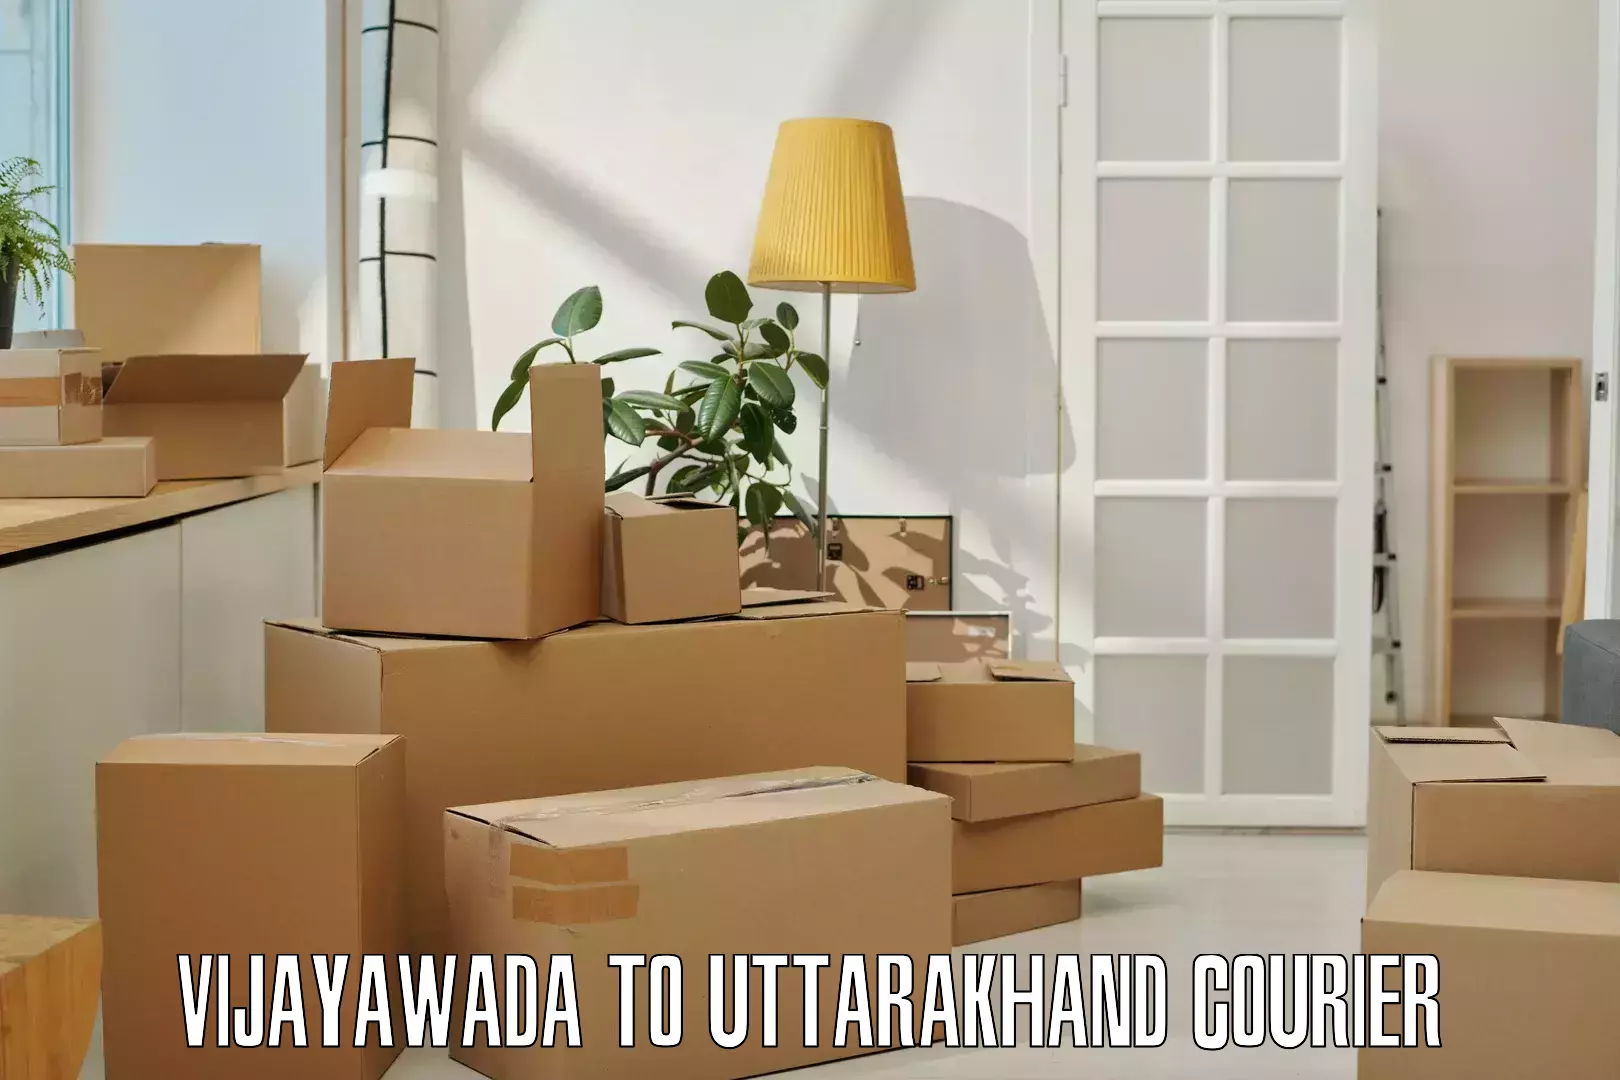 Next day courier Vijayawada to Dwarahat